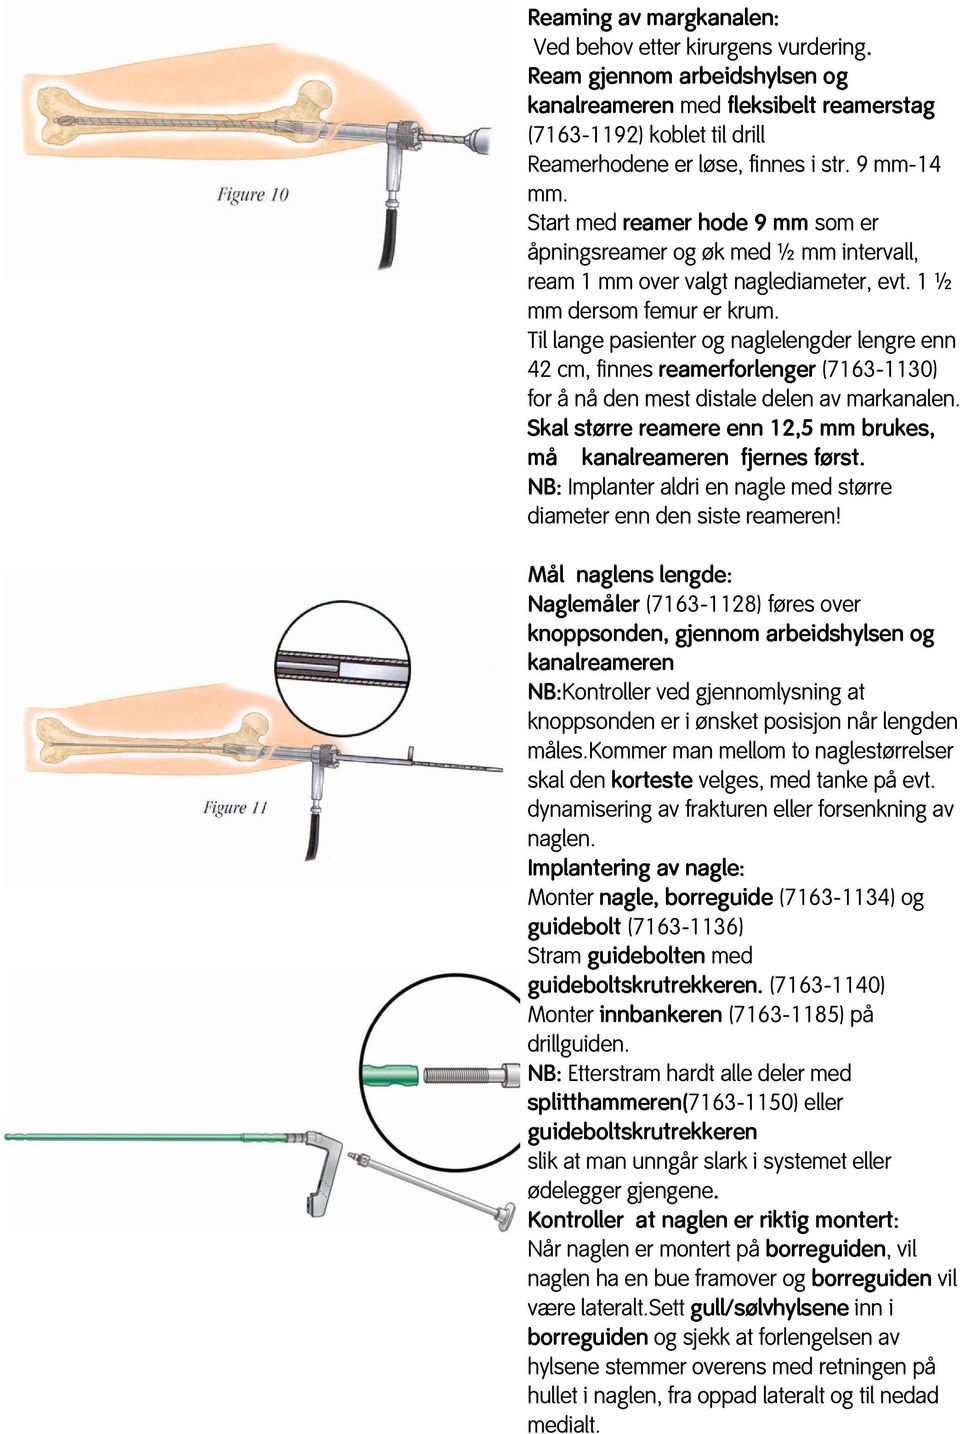 Til lange pasienter og naglelengder lengre enn 42 cm, finnes reamerforlenger (7163-1130) for å nå den mest distale delen av markanalen.